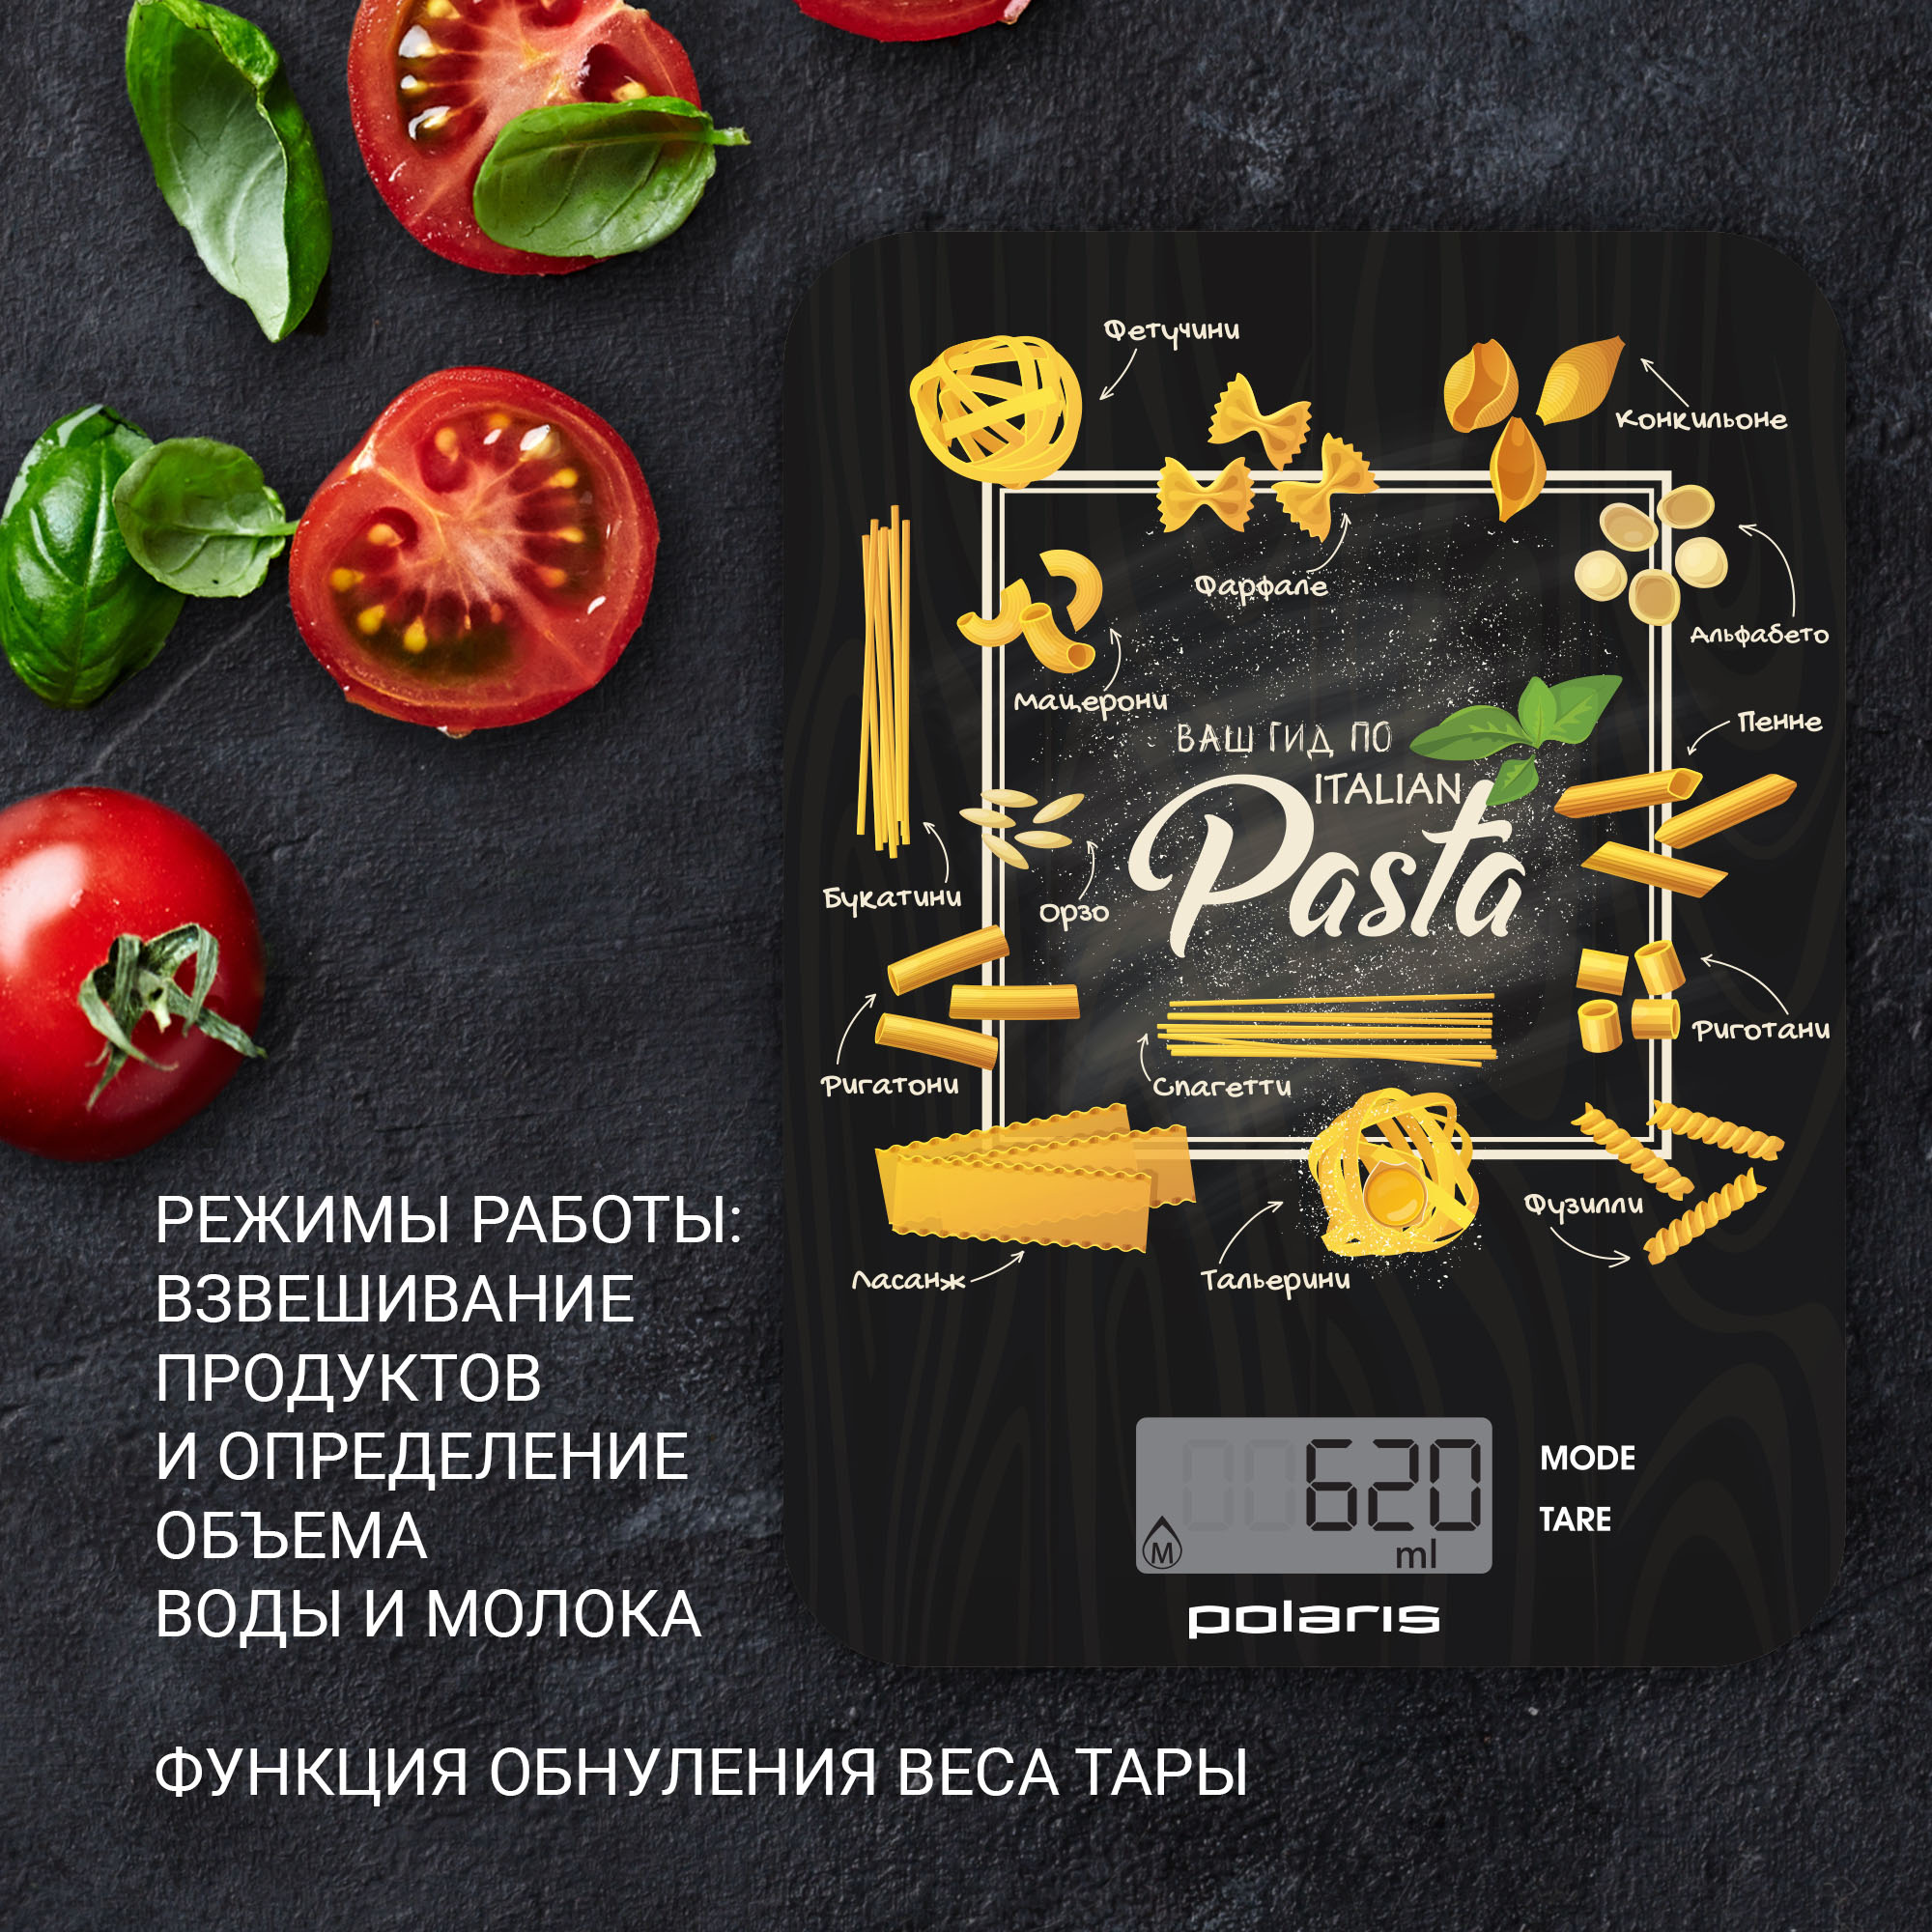 02_pks1054dg_pasta